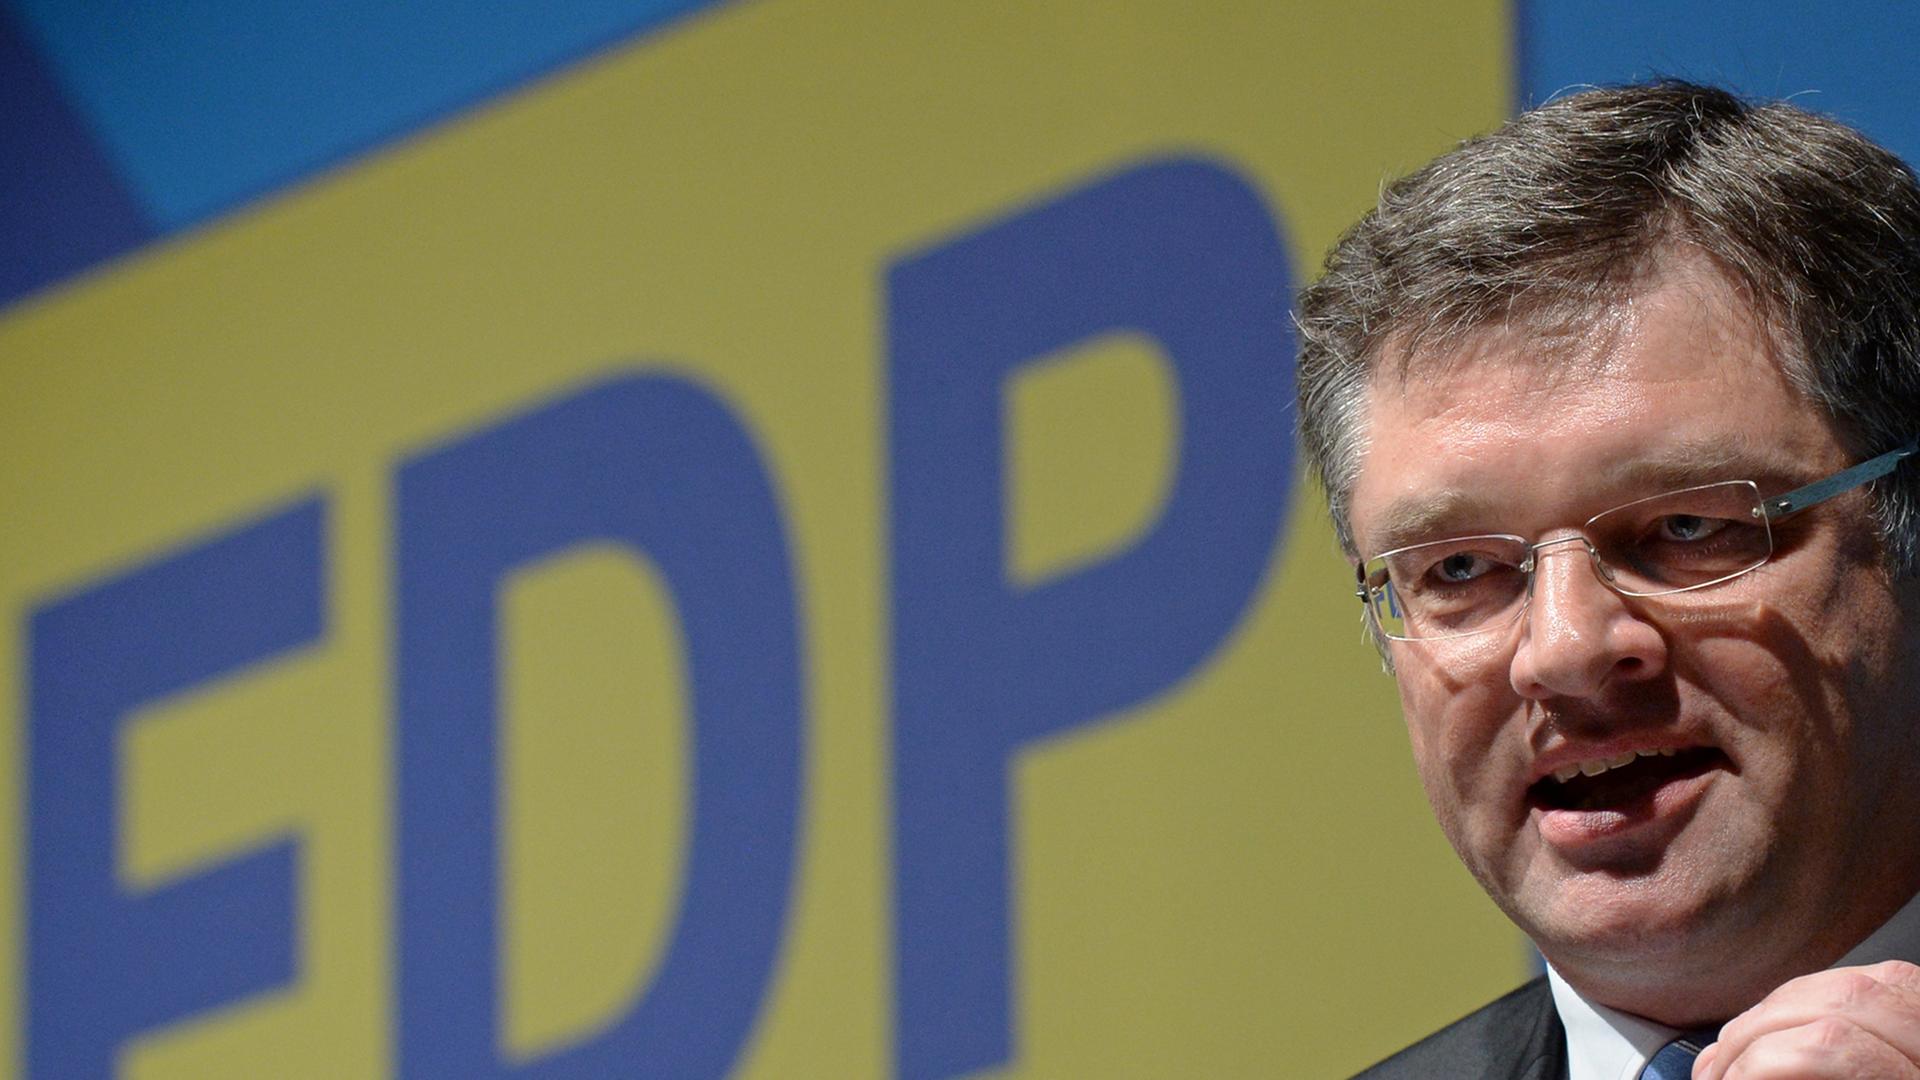 Der Vorsitzende der sächsischen FDP, Holger Zastrow, spricht am 03.05.2014 auf dem Landesparteitag der FDP in Chemnitz (Sachsen).